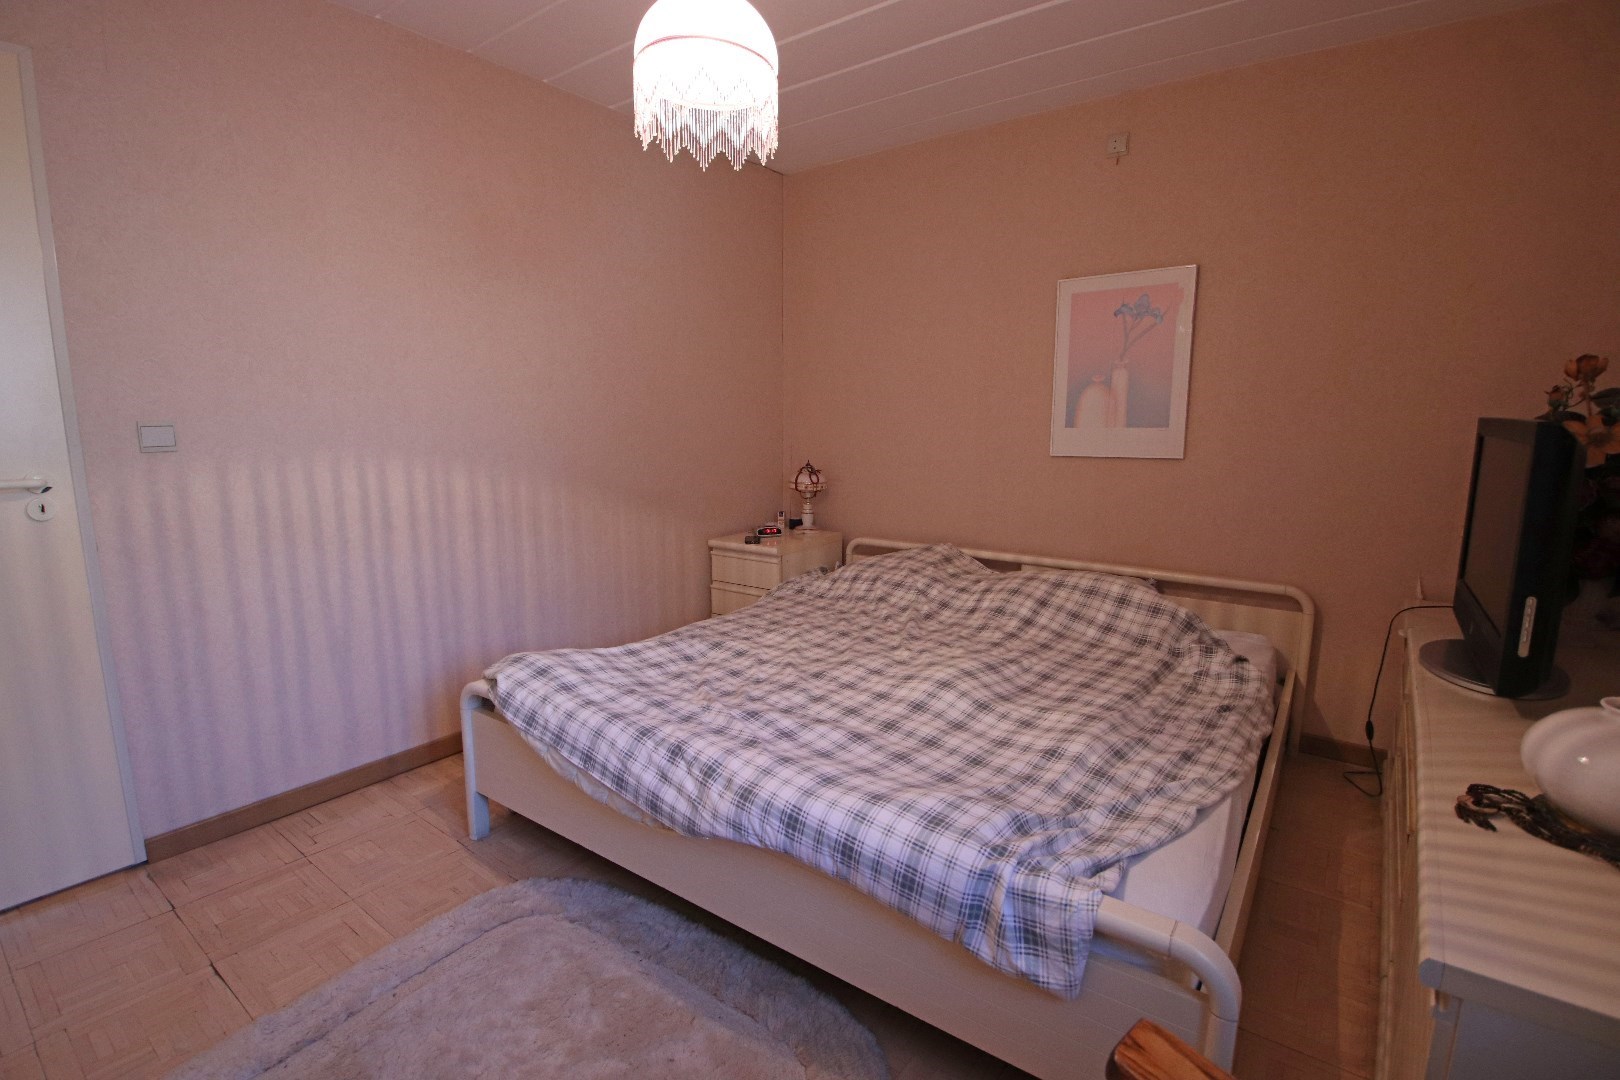 Appartement met 2 slaapkamers gelegen in het centrum van Mol. 